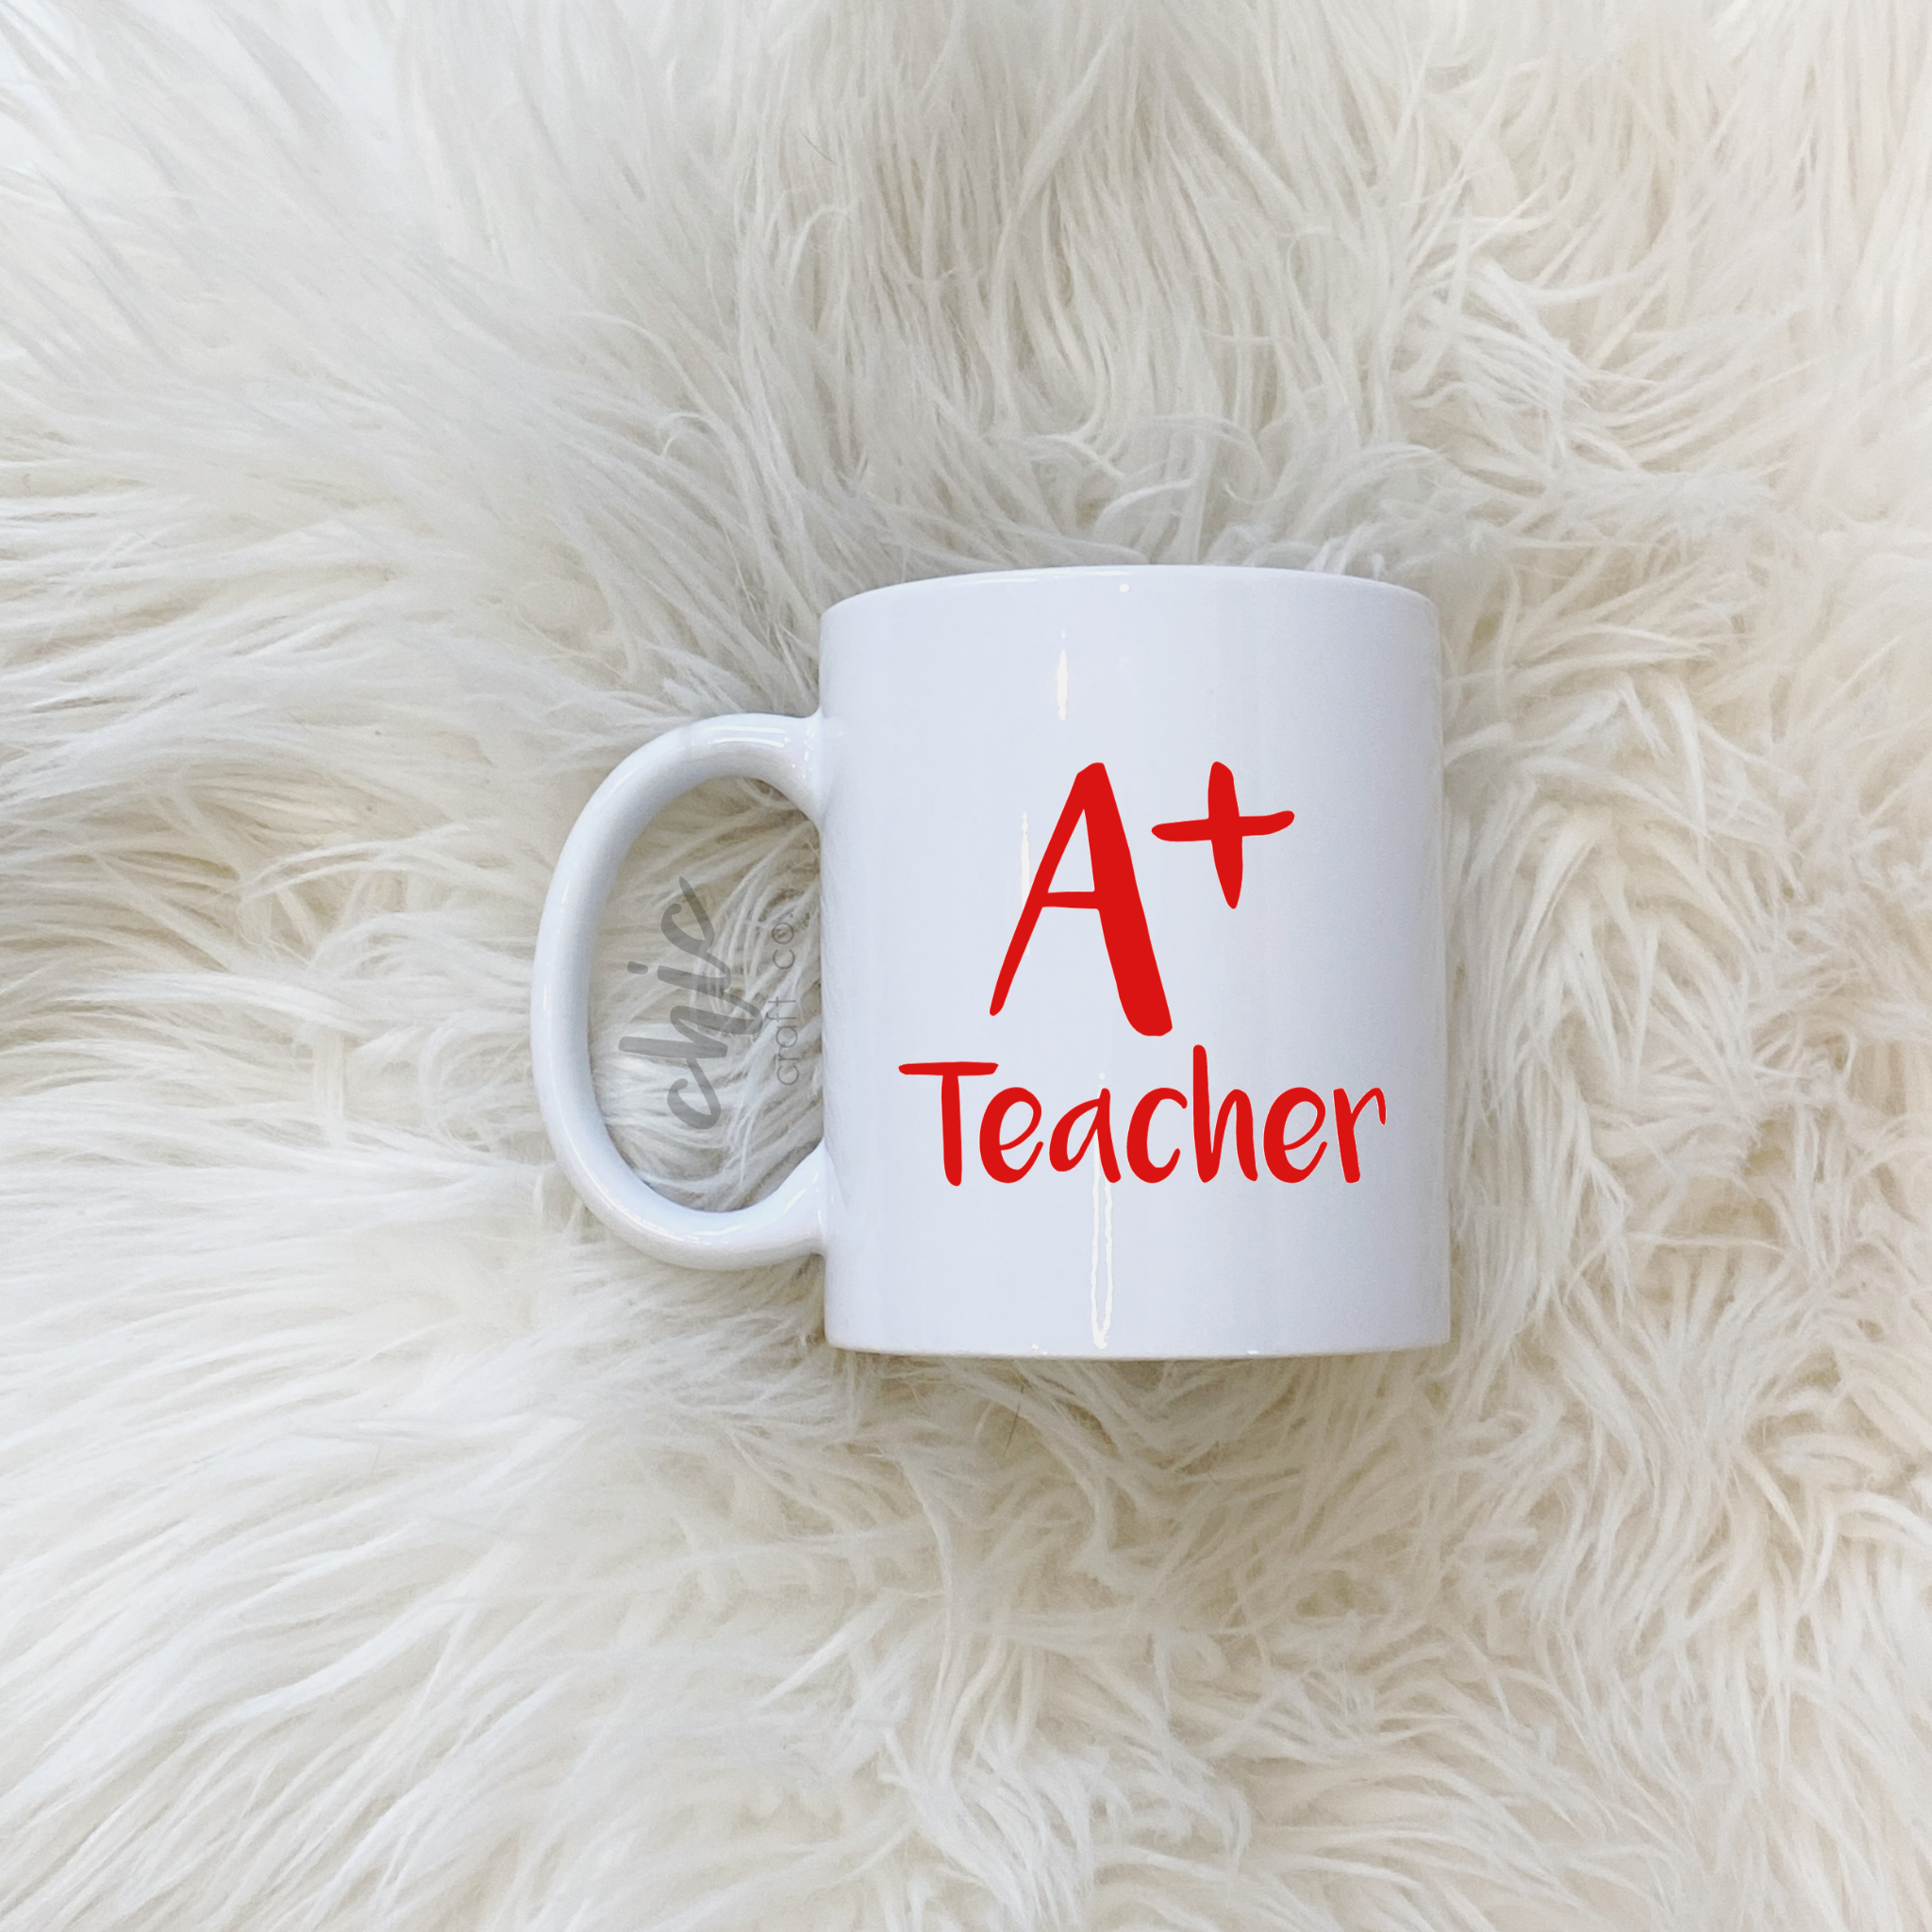 A+ Teacher